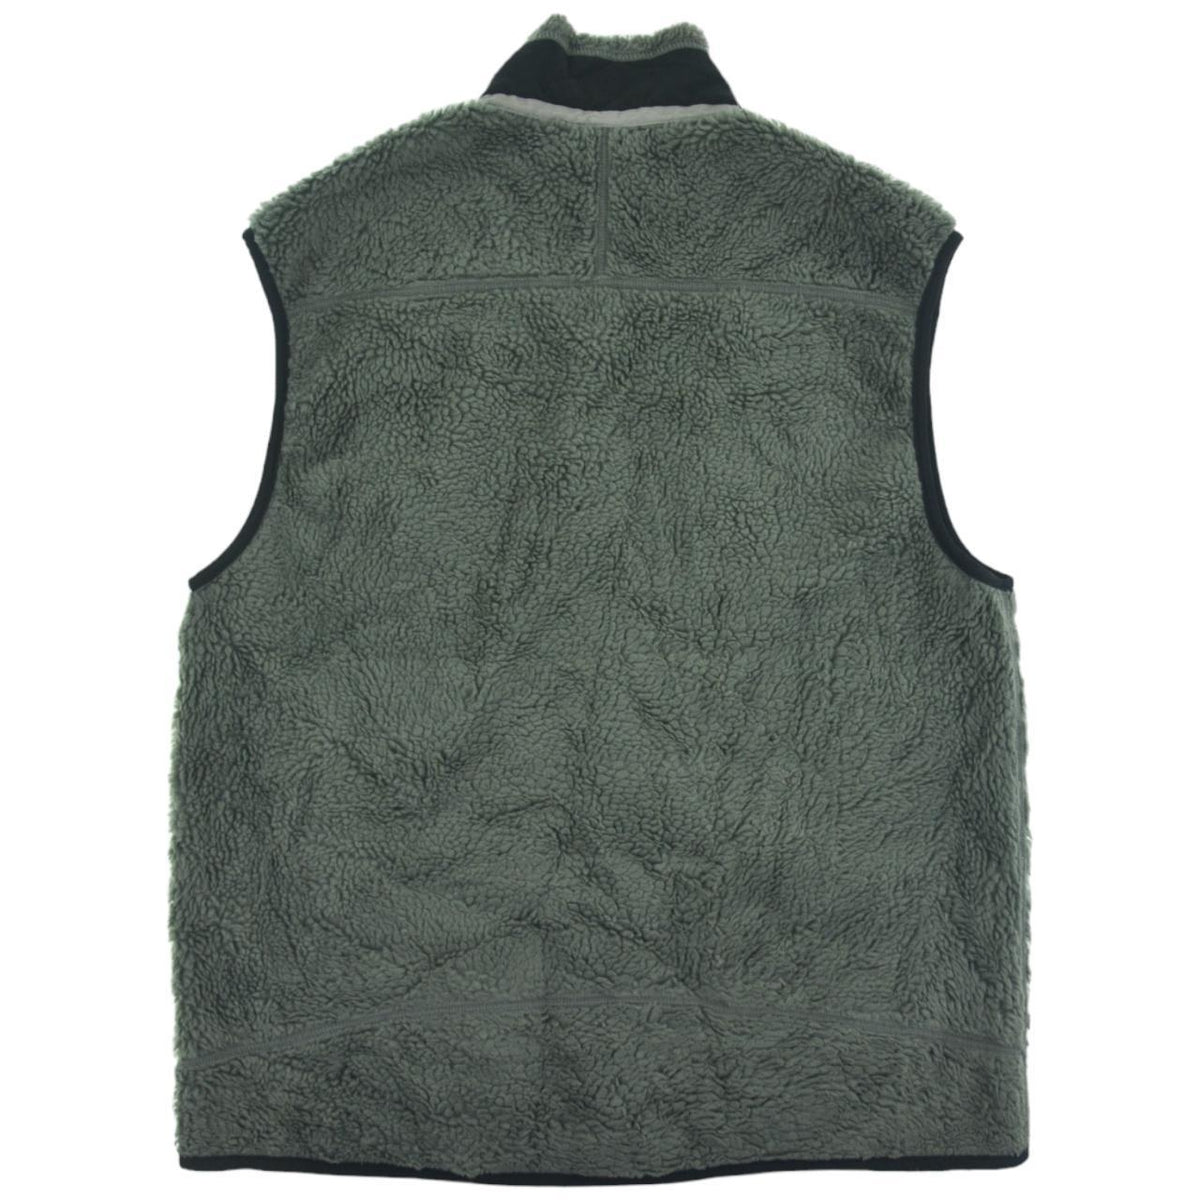 Vintage Patagonia Retro X Fleece Gilet Size M